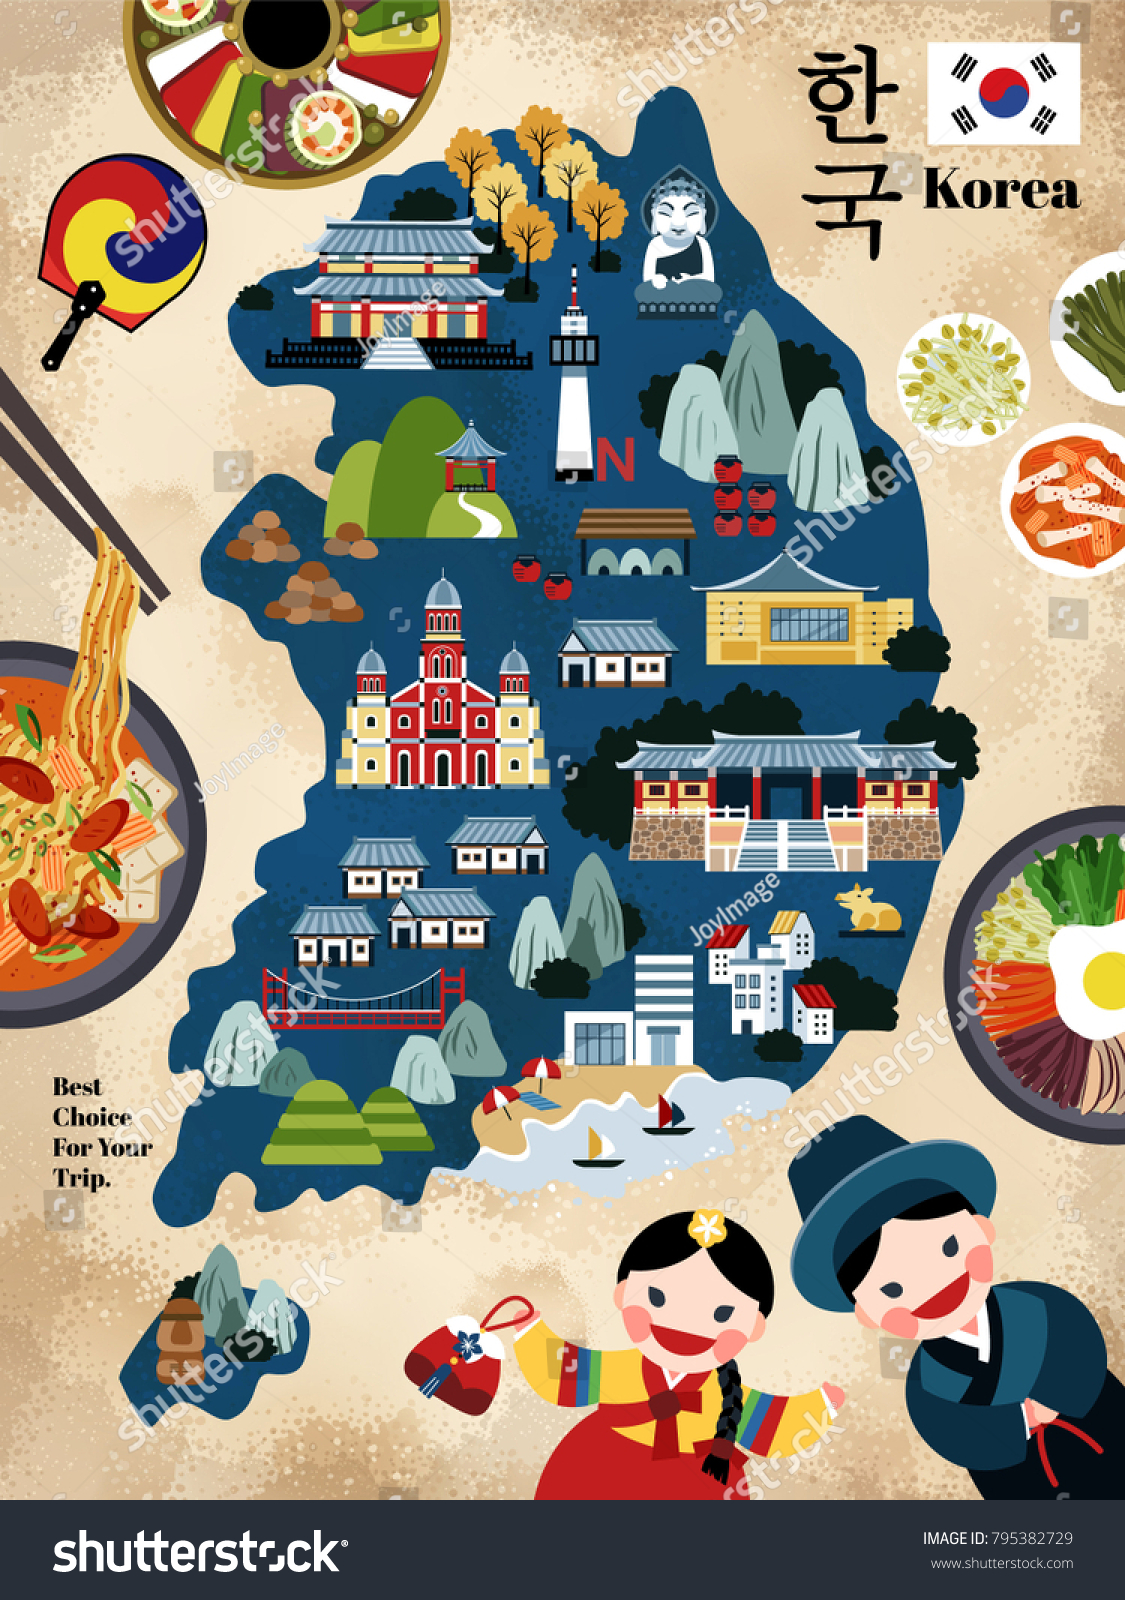 韓国の旅行地図 韓国の有名な目印で 観光客にお勧めのおいしい料理 韓国の国名を韓国の言葉で表した美しい旅行地図 のイラスト素材